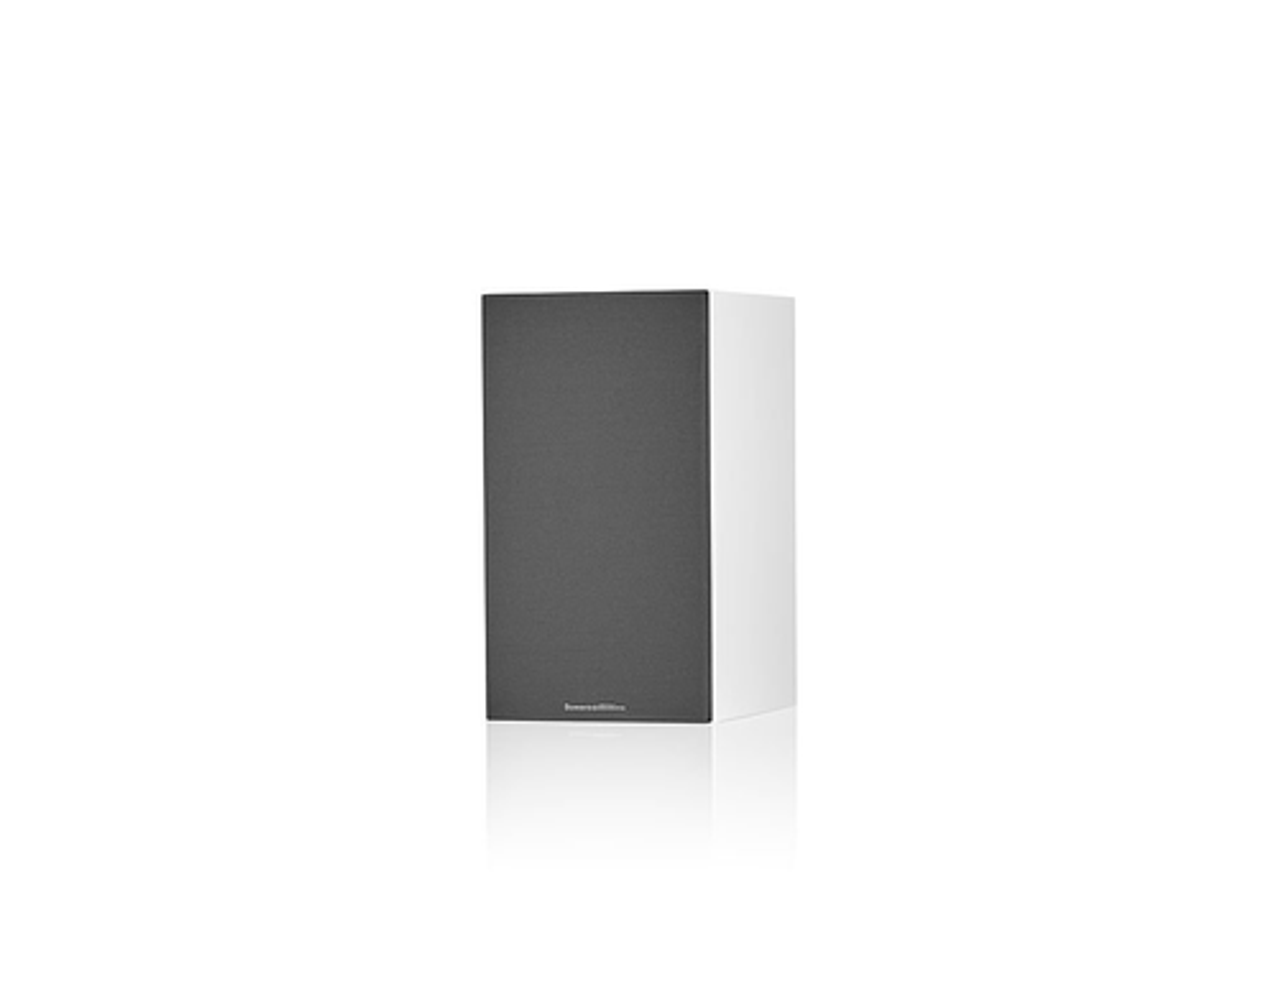 Bowers & Wilkins - 600 S3 Series 2-Way Bookshelf Loudspeakers (Pair) - White